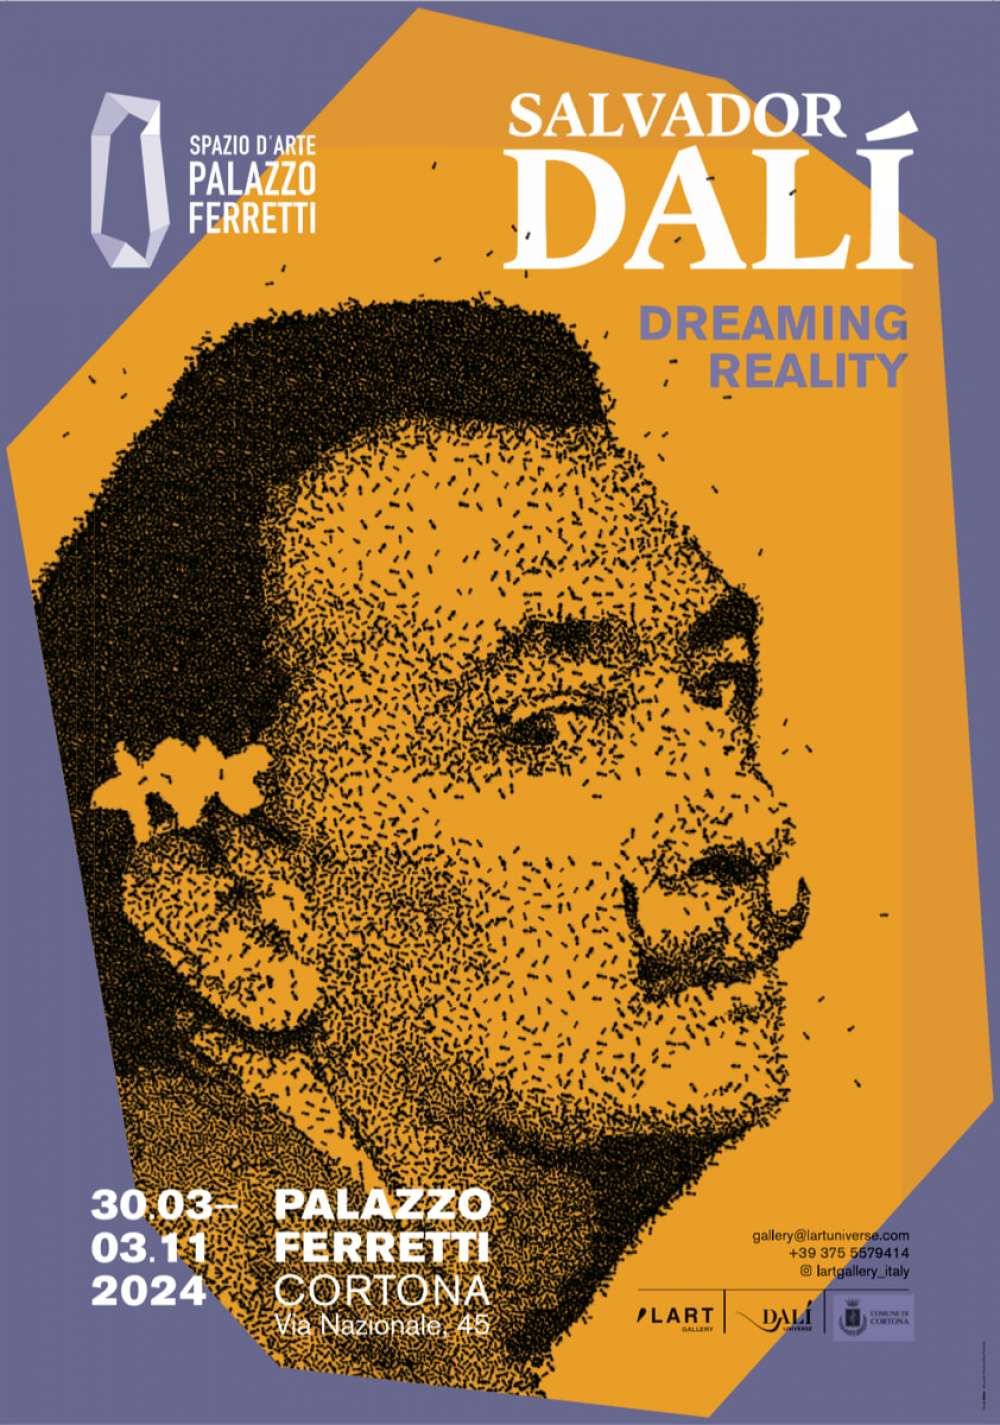 Palazzo Ferretti diventa “Spazio d’arte” con le opere di Dalí, Picasso e Chagall